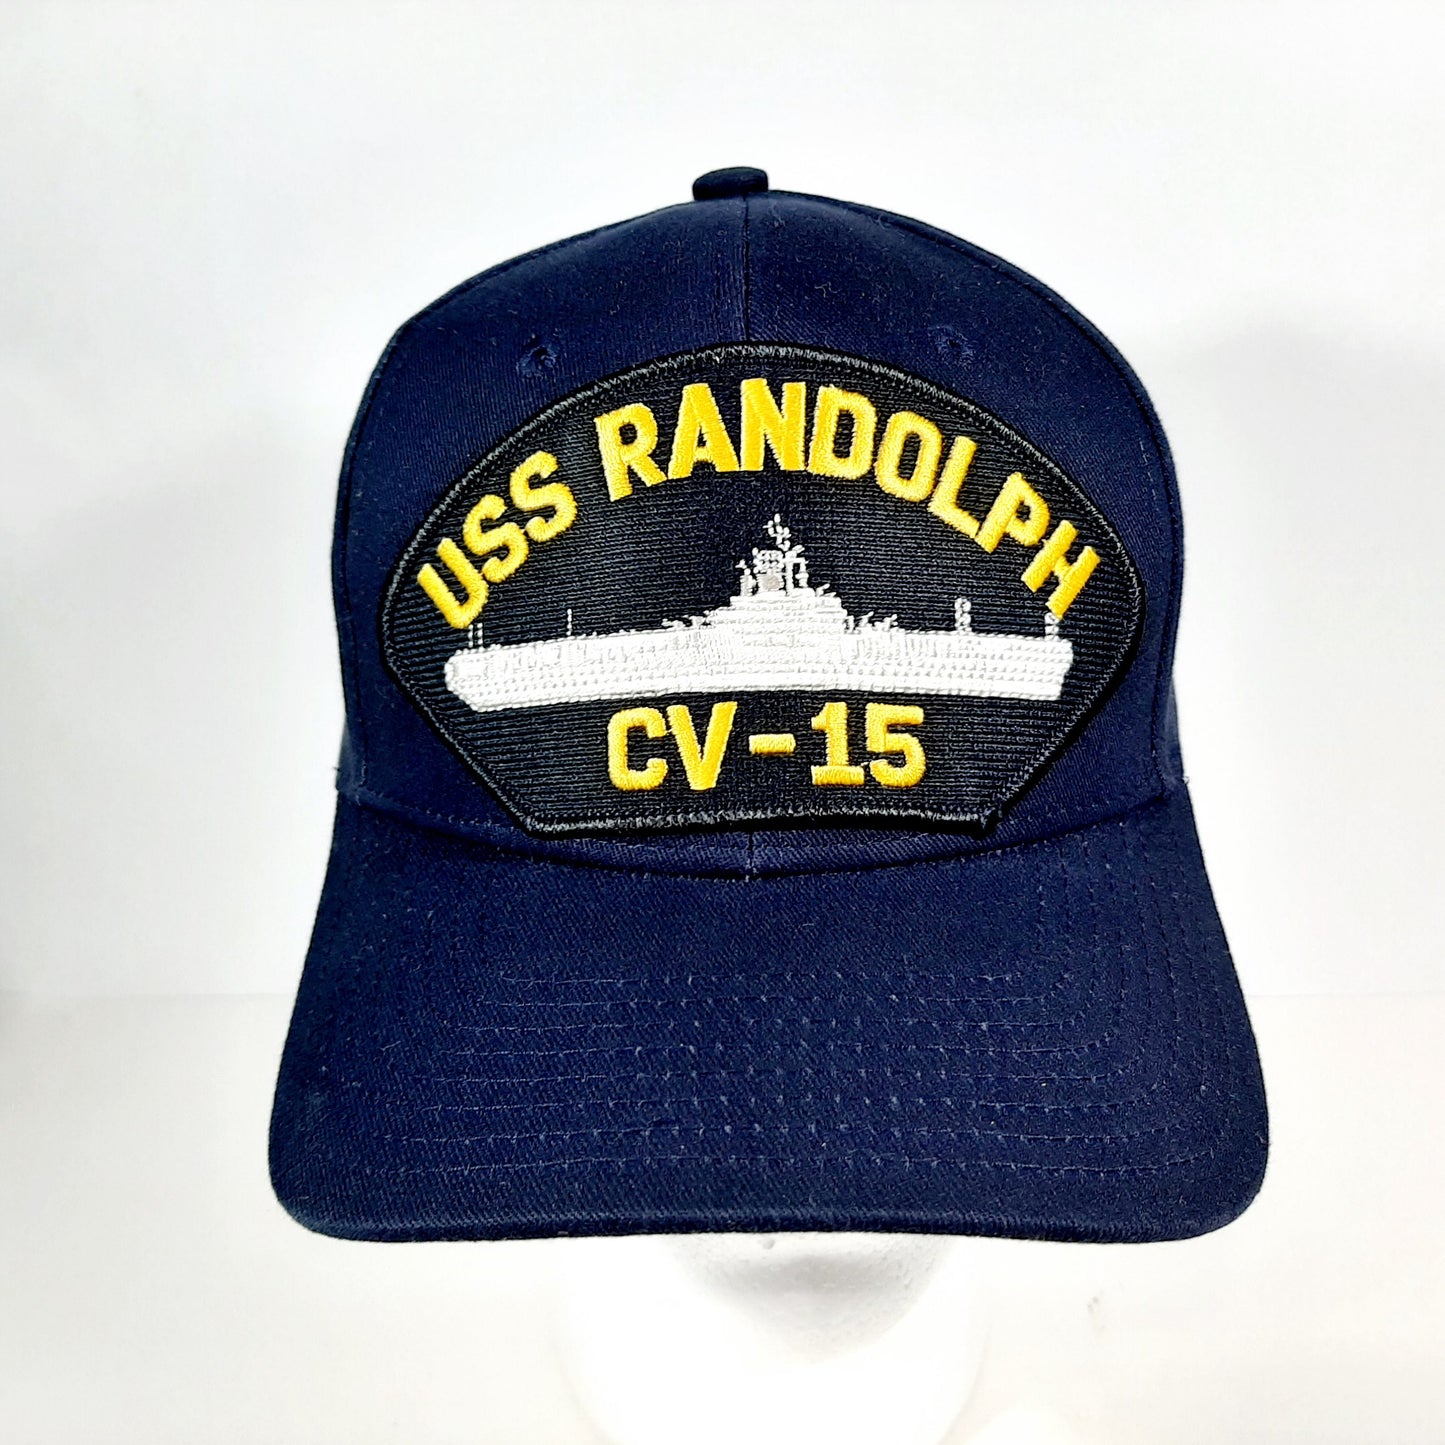 USS RANDOLPH CV-15 Patch Hat Baseball Cap Adjustable Navy Blue